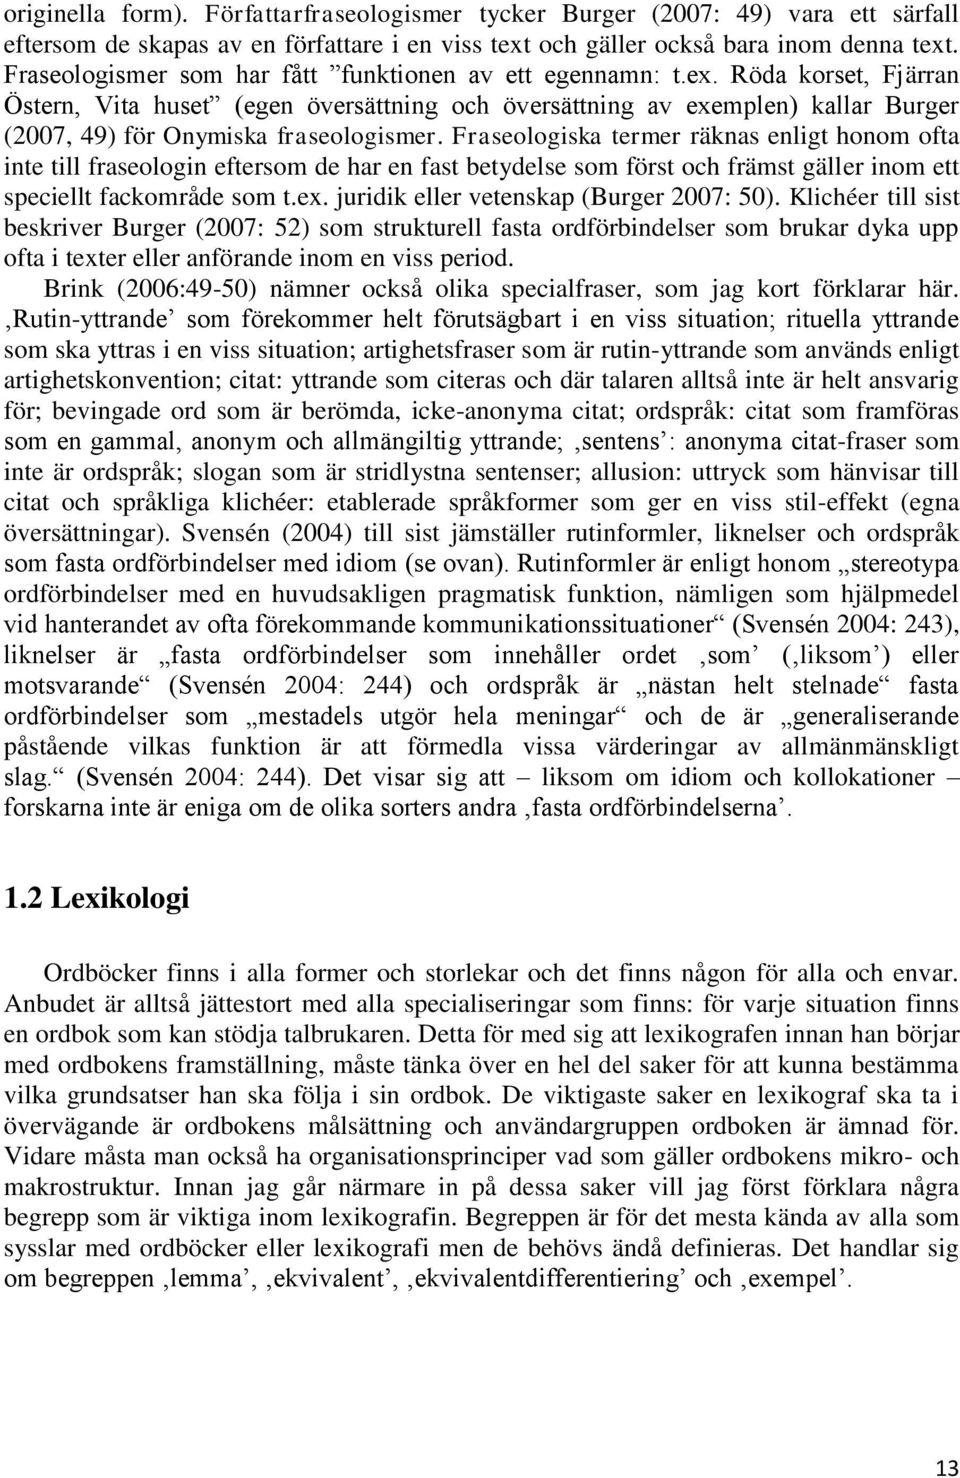 Röda korset, Fjärran Östern, Vita huset (egen översättning och översättning av exemplen) kallar Burger (2007, 49) för Onymiska fraseologismer.